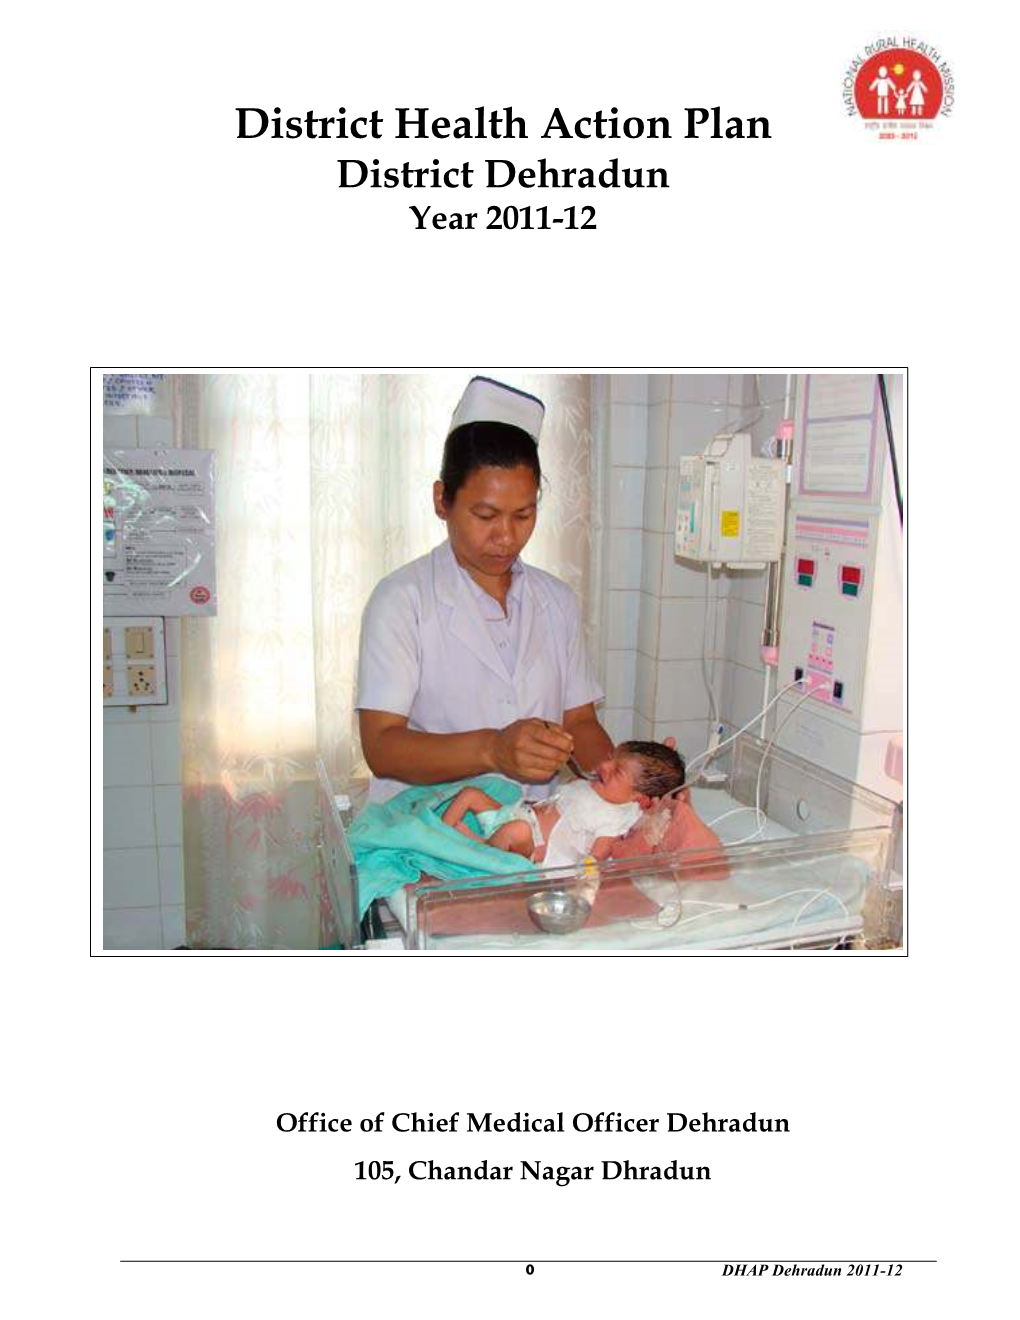 District Health Action Plan District Dehradun Year 2011-12